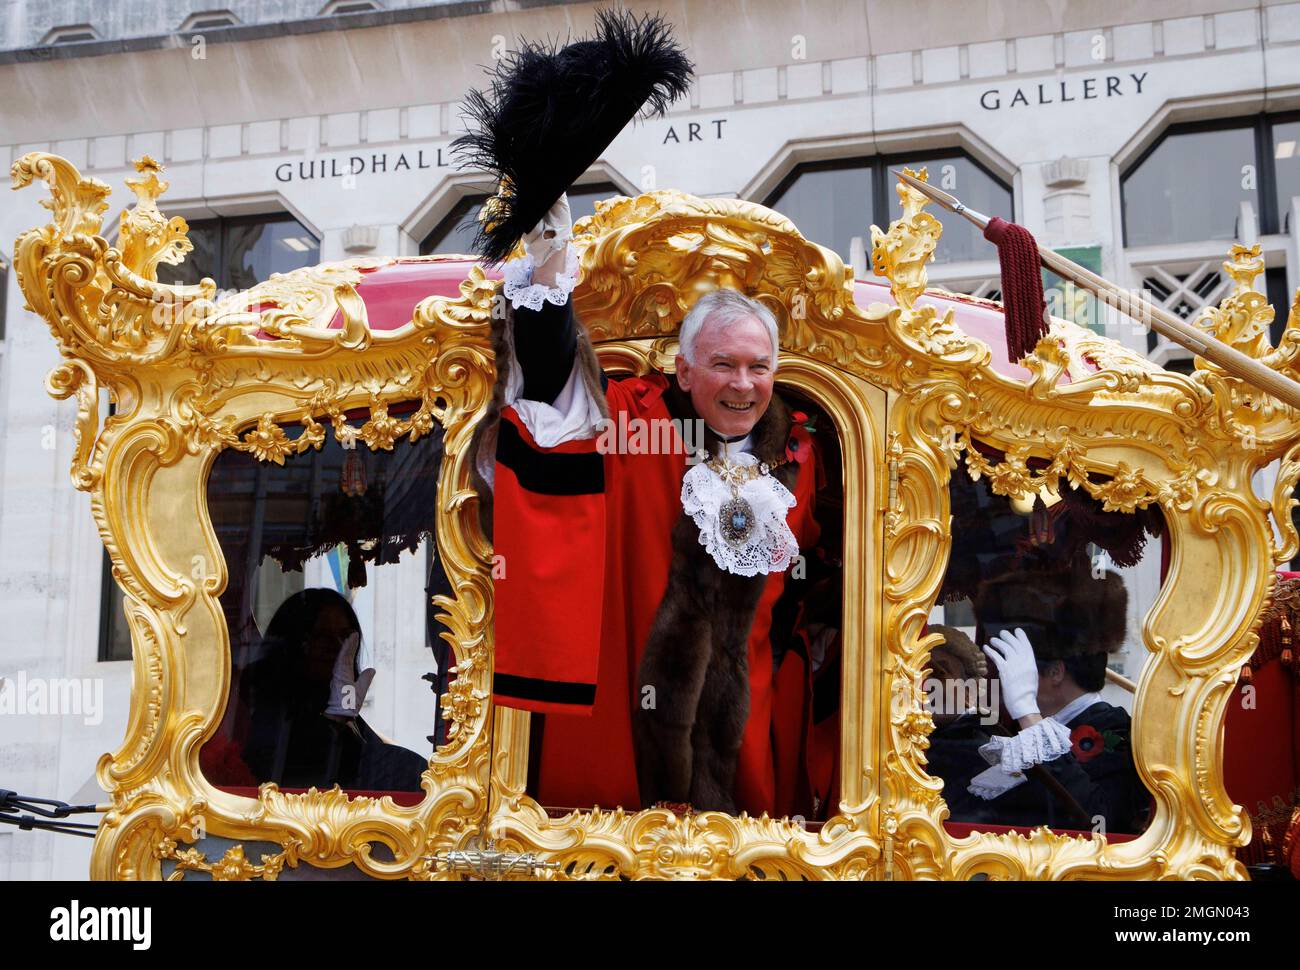 Lord Mayor, Nicholas Lyons, Leiter der City of London, winkt vom Gold State Coach in der Guildhall, als er der 694. Bürgermeister von London wird. Stockfoto